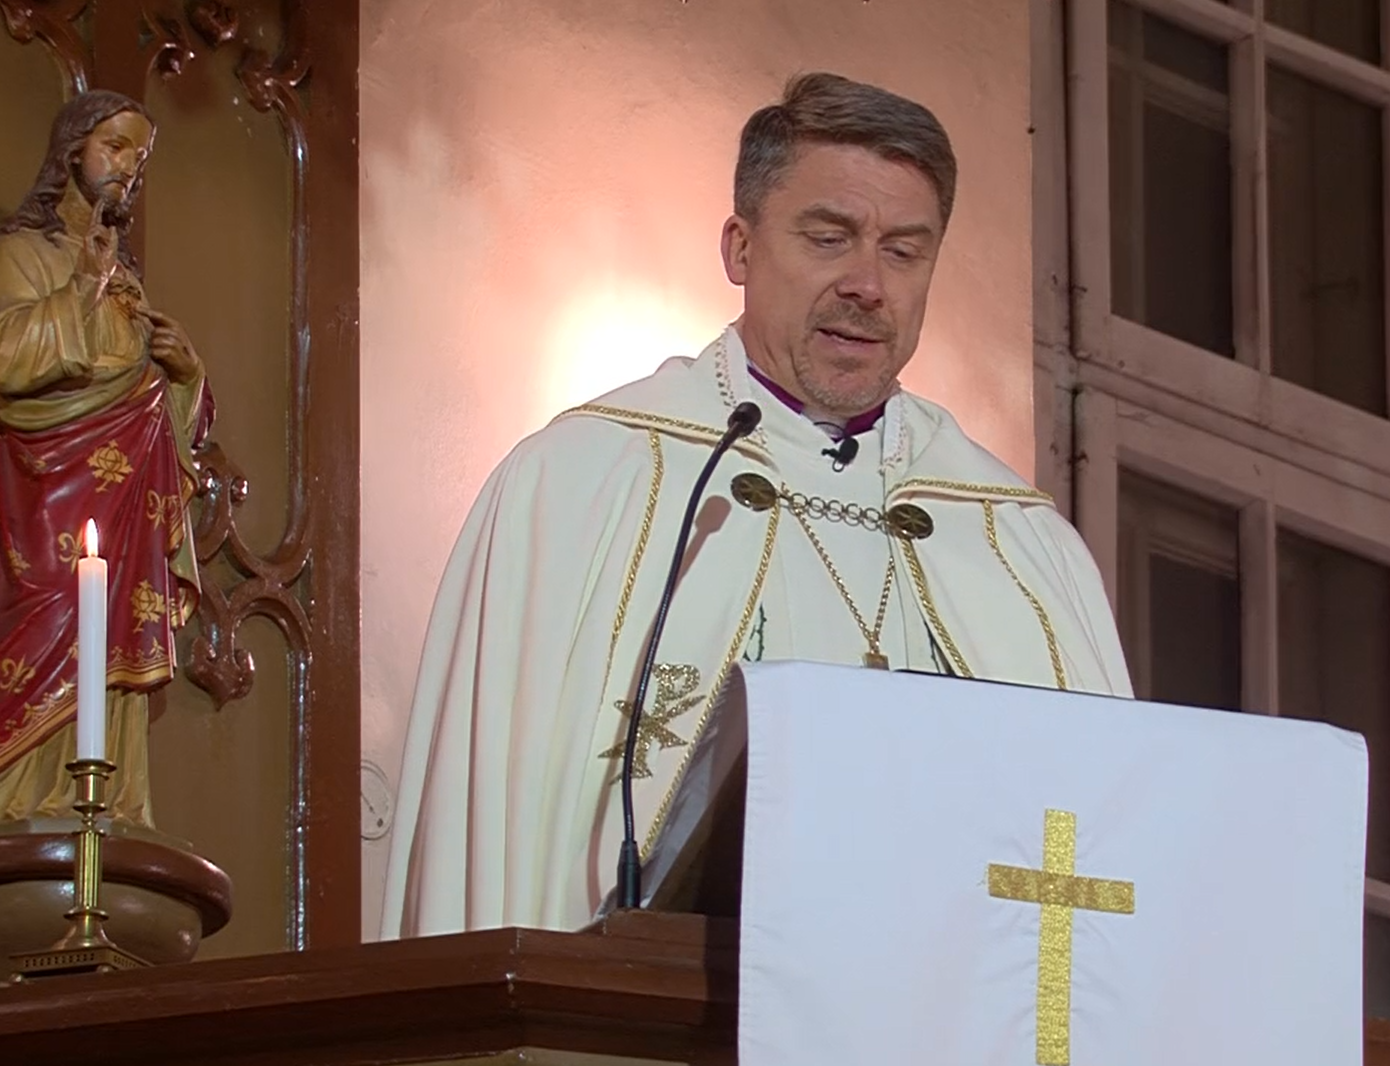 Peapiiskop Urmas Viilma jõulujutlus rääkis inglitest ja põgenikest jõululauas